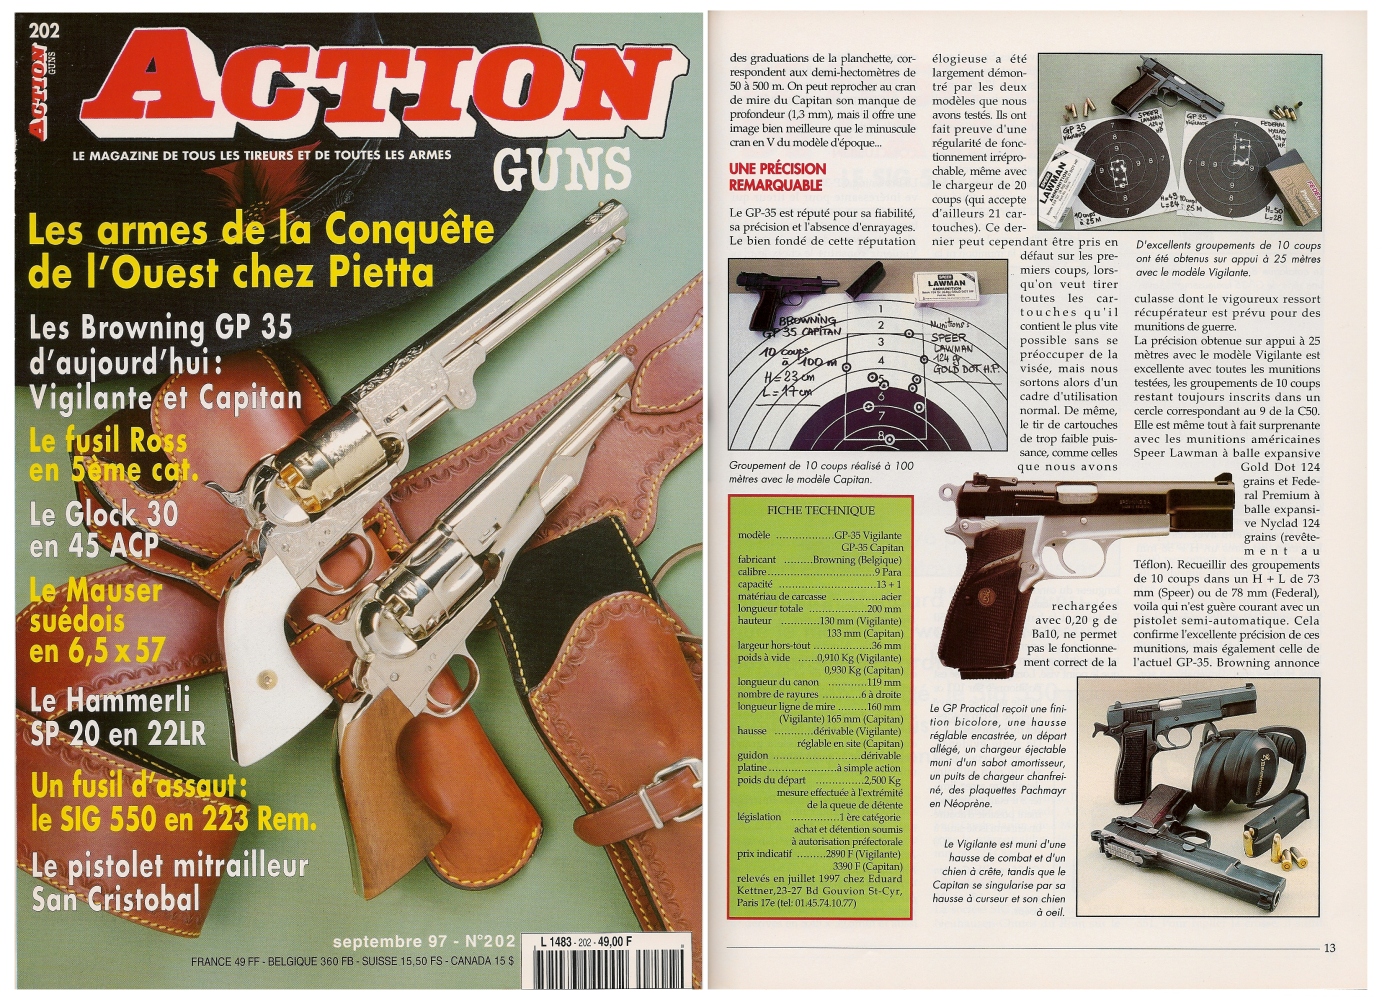  Le banc d'essai des pistolets Browning GP-35 Vigilante et Capitan a été publié sur 7 pages dans le magazine Action Guns n°202 (septembre 1997).